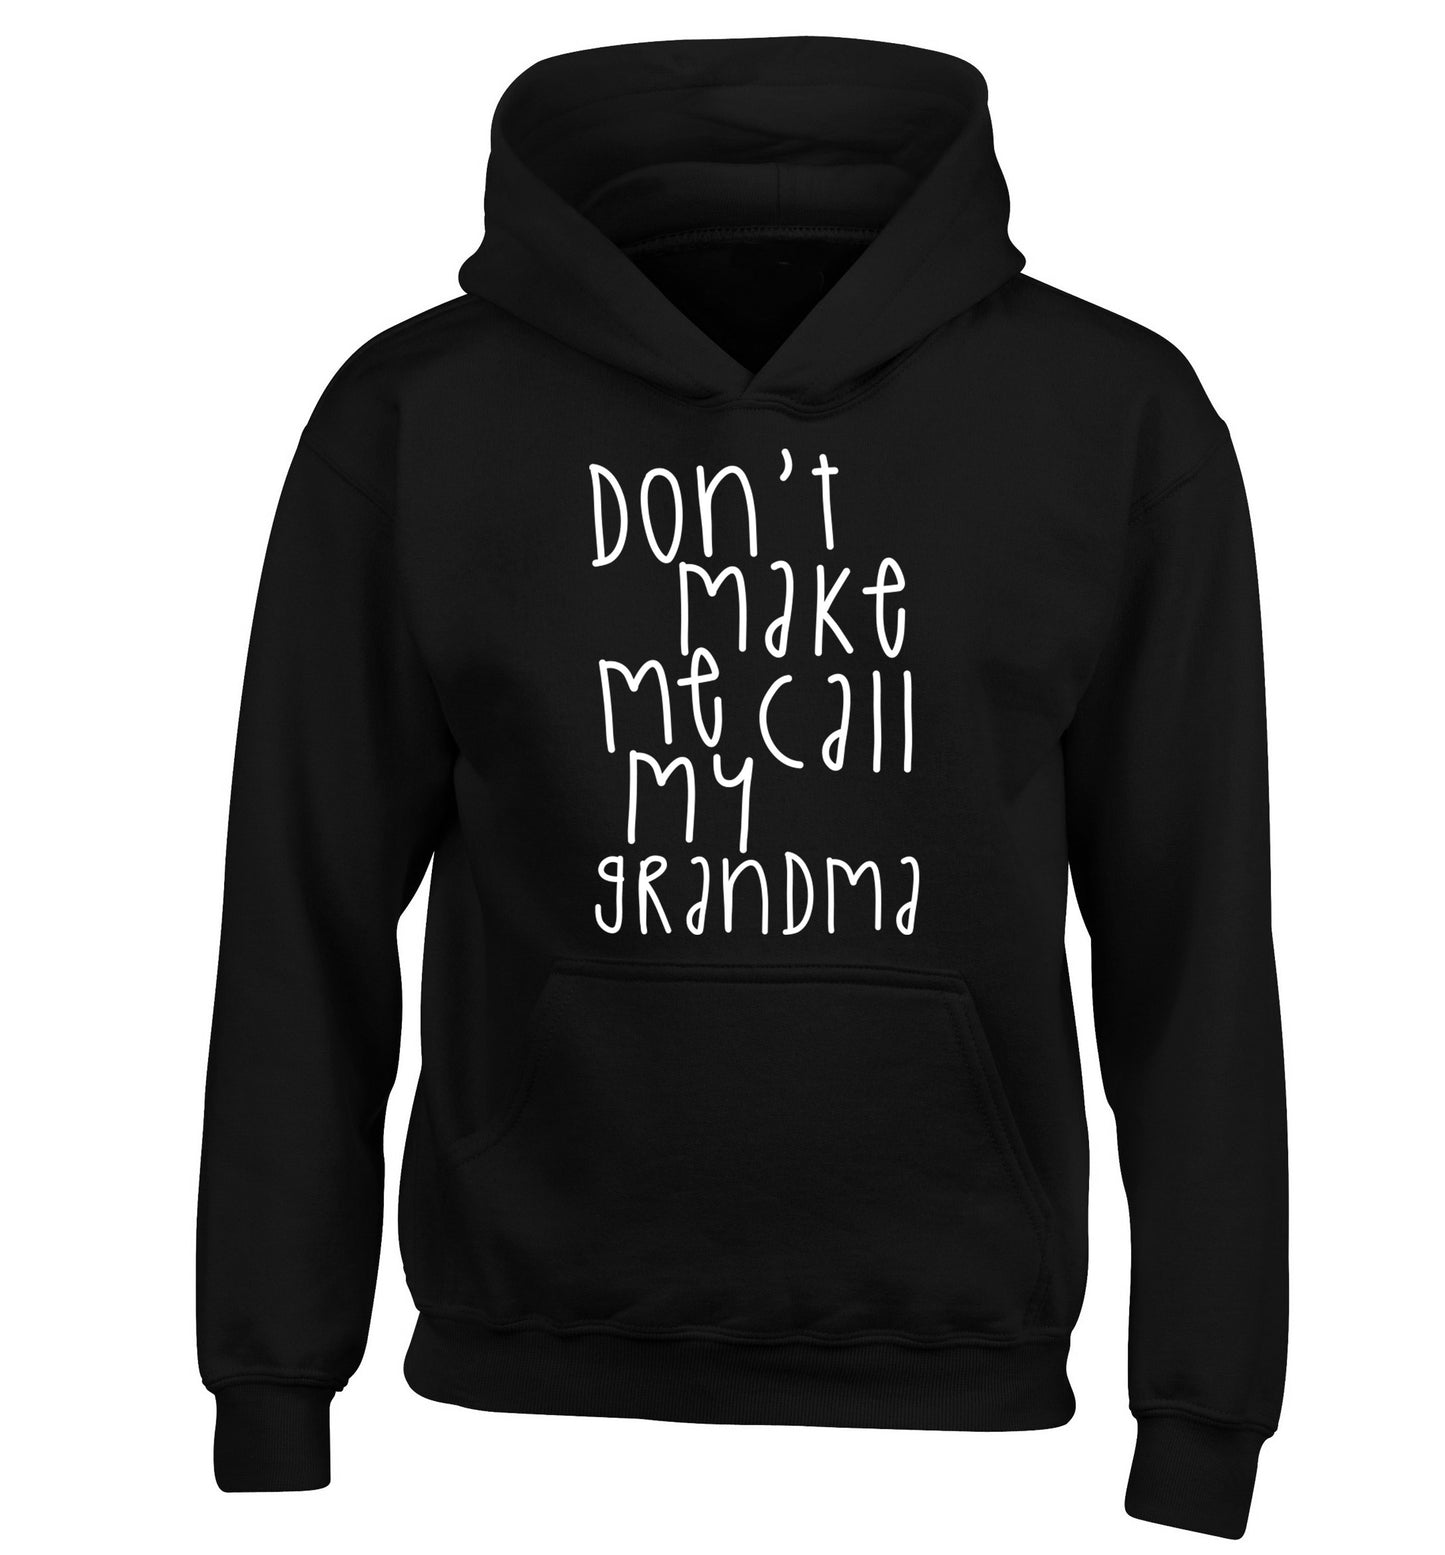 Don't make me call my grandma children's black hoodie 12-14 Years